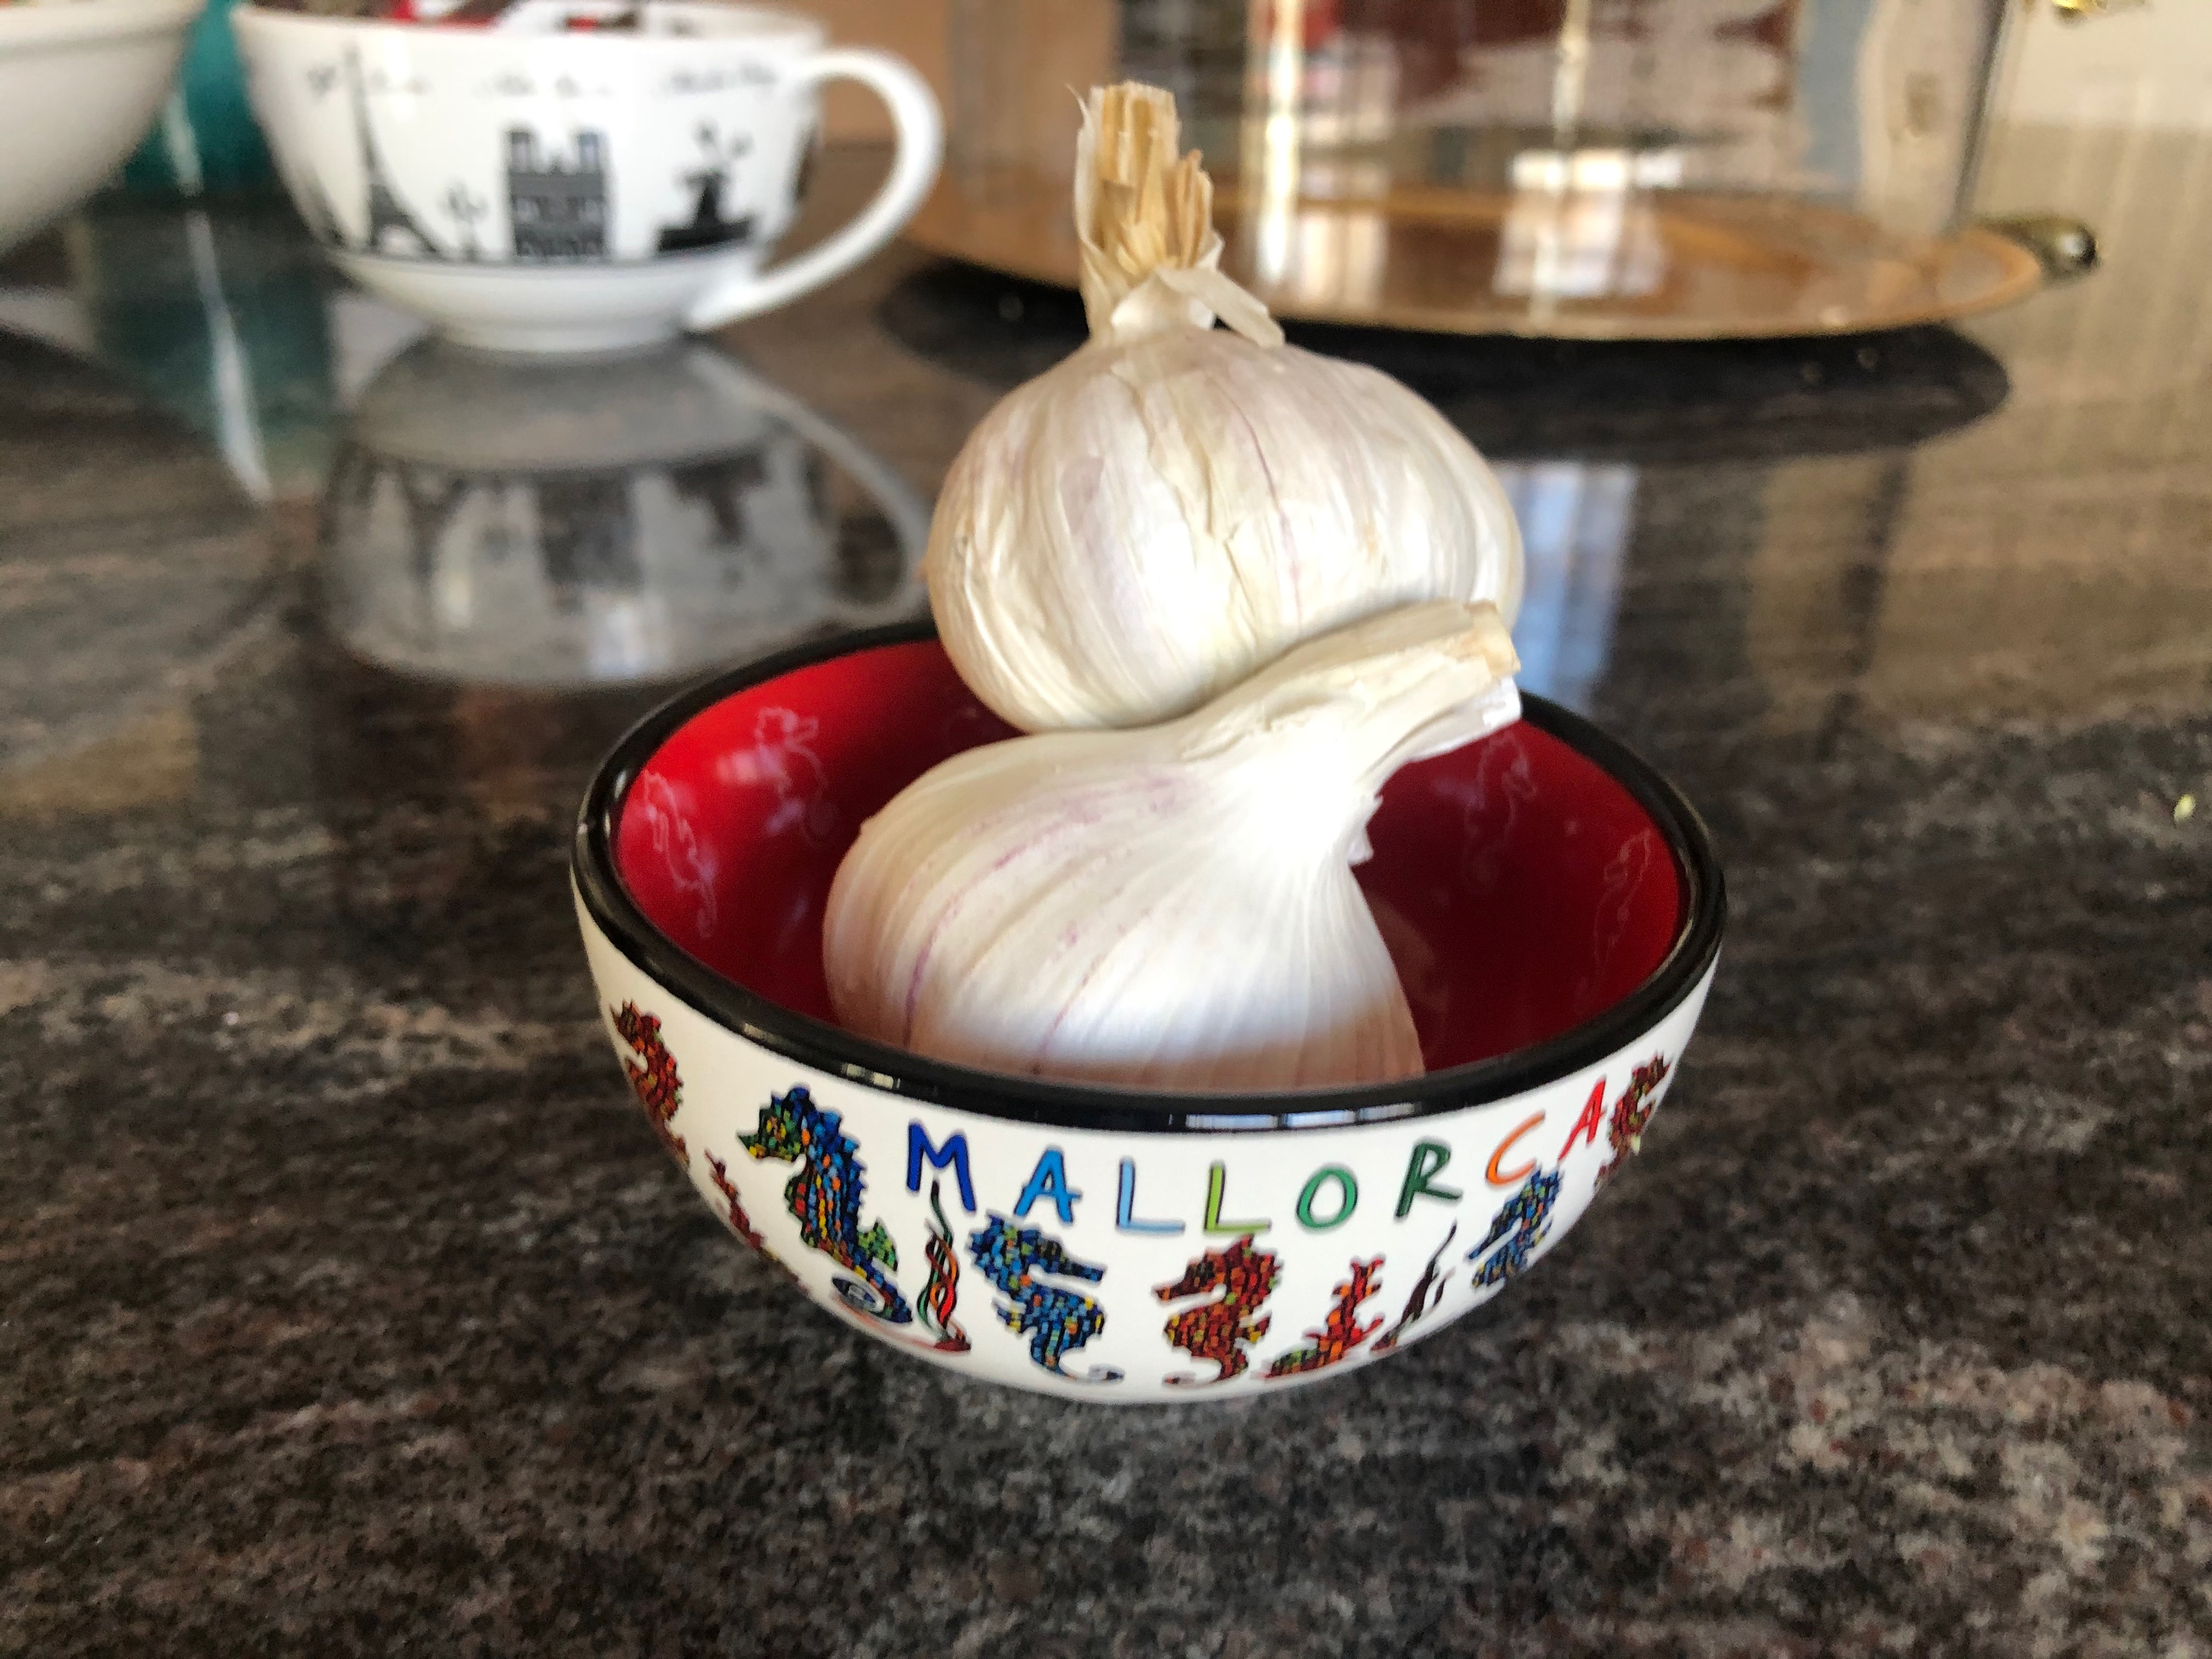 Garlic - best ingredients